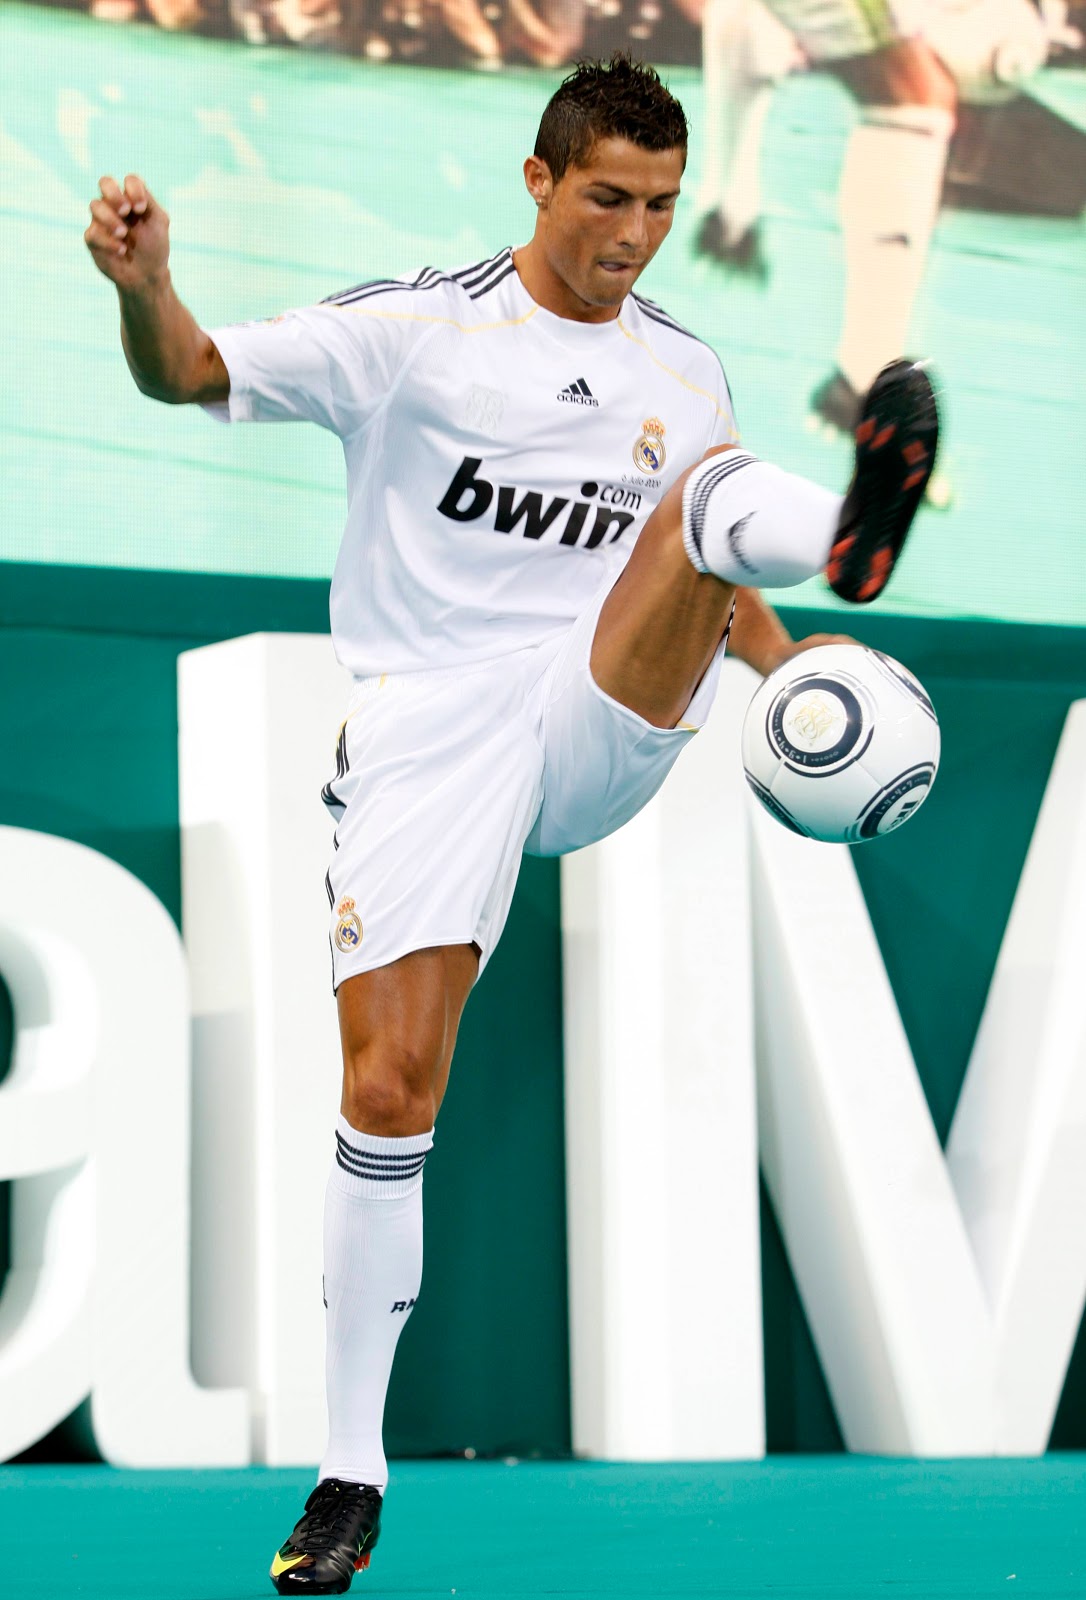 http://2.bp.blogspot.com/-Kkj1RqyDnSQ/TwQX32pvEKI/AAAAAAAAIZw/U16YZMO57lY/s1600/Cristiano+Ronaldo++19.jpg